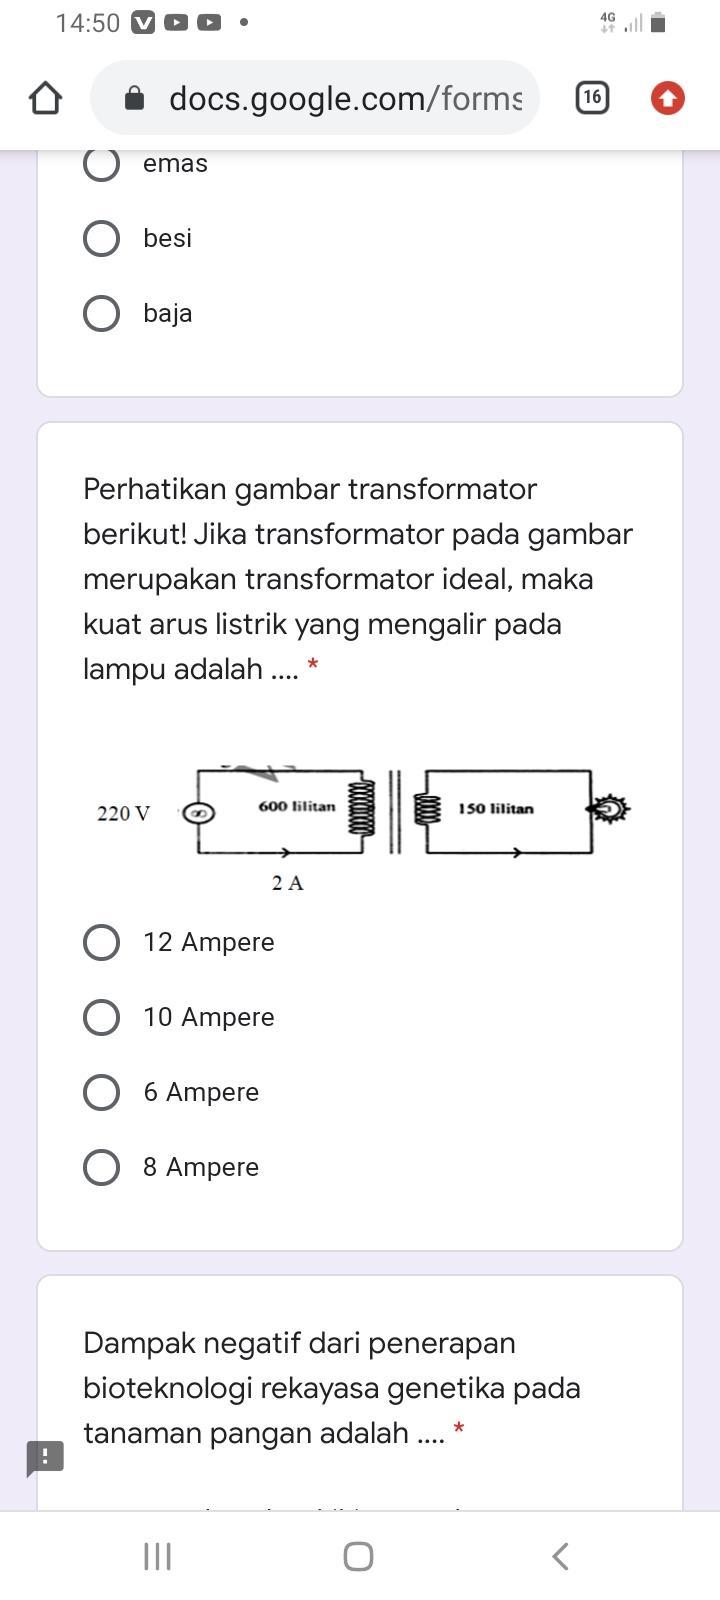 Detail Jika Transformator Pada Gambar Merupakan Transformator Ideal Nomer 11